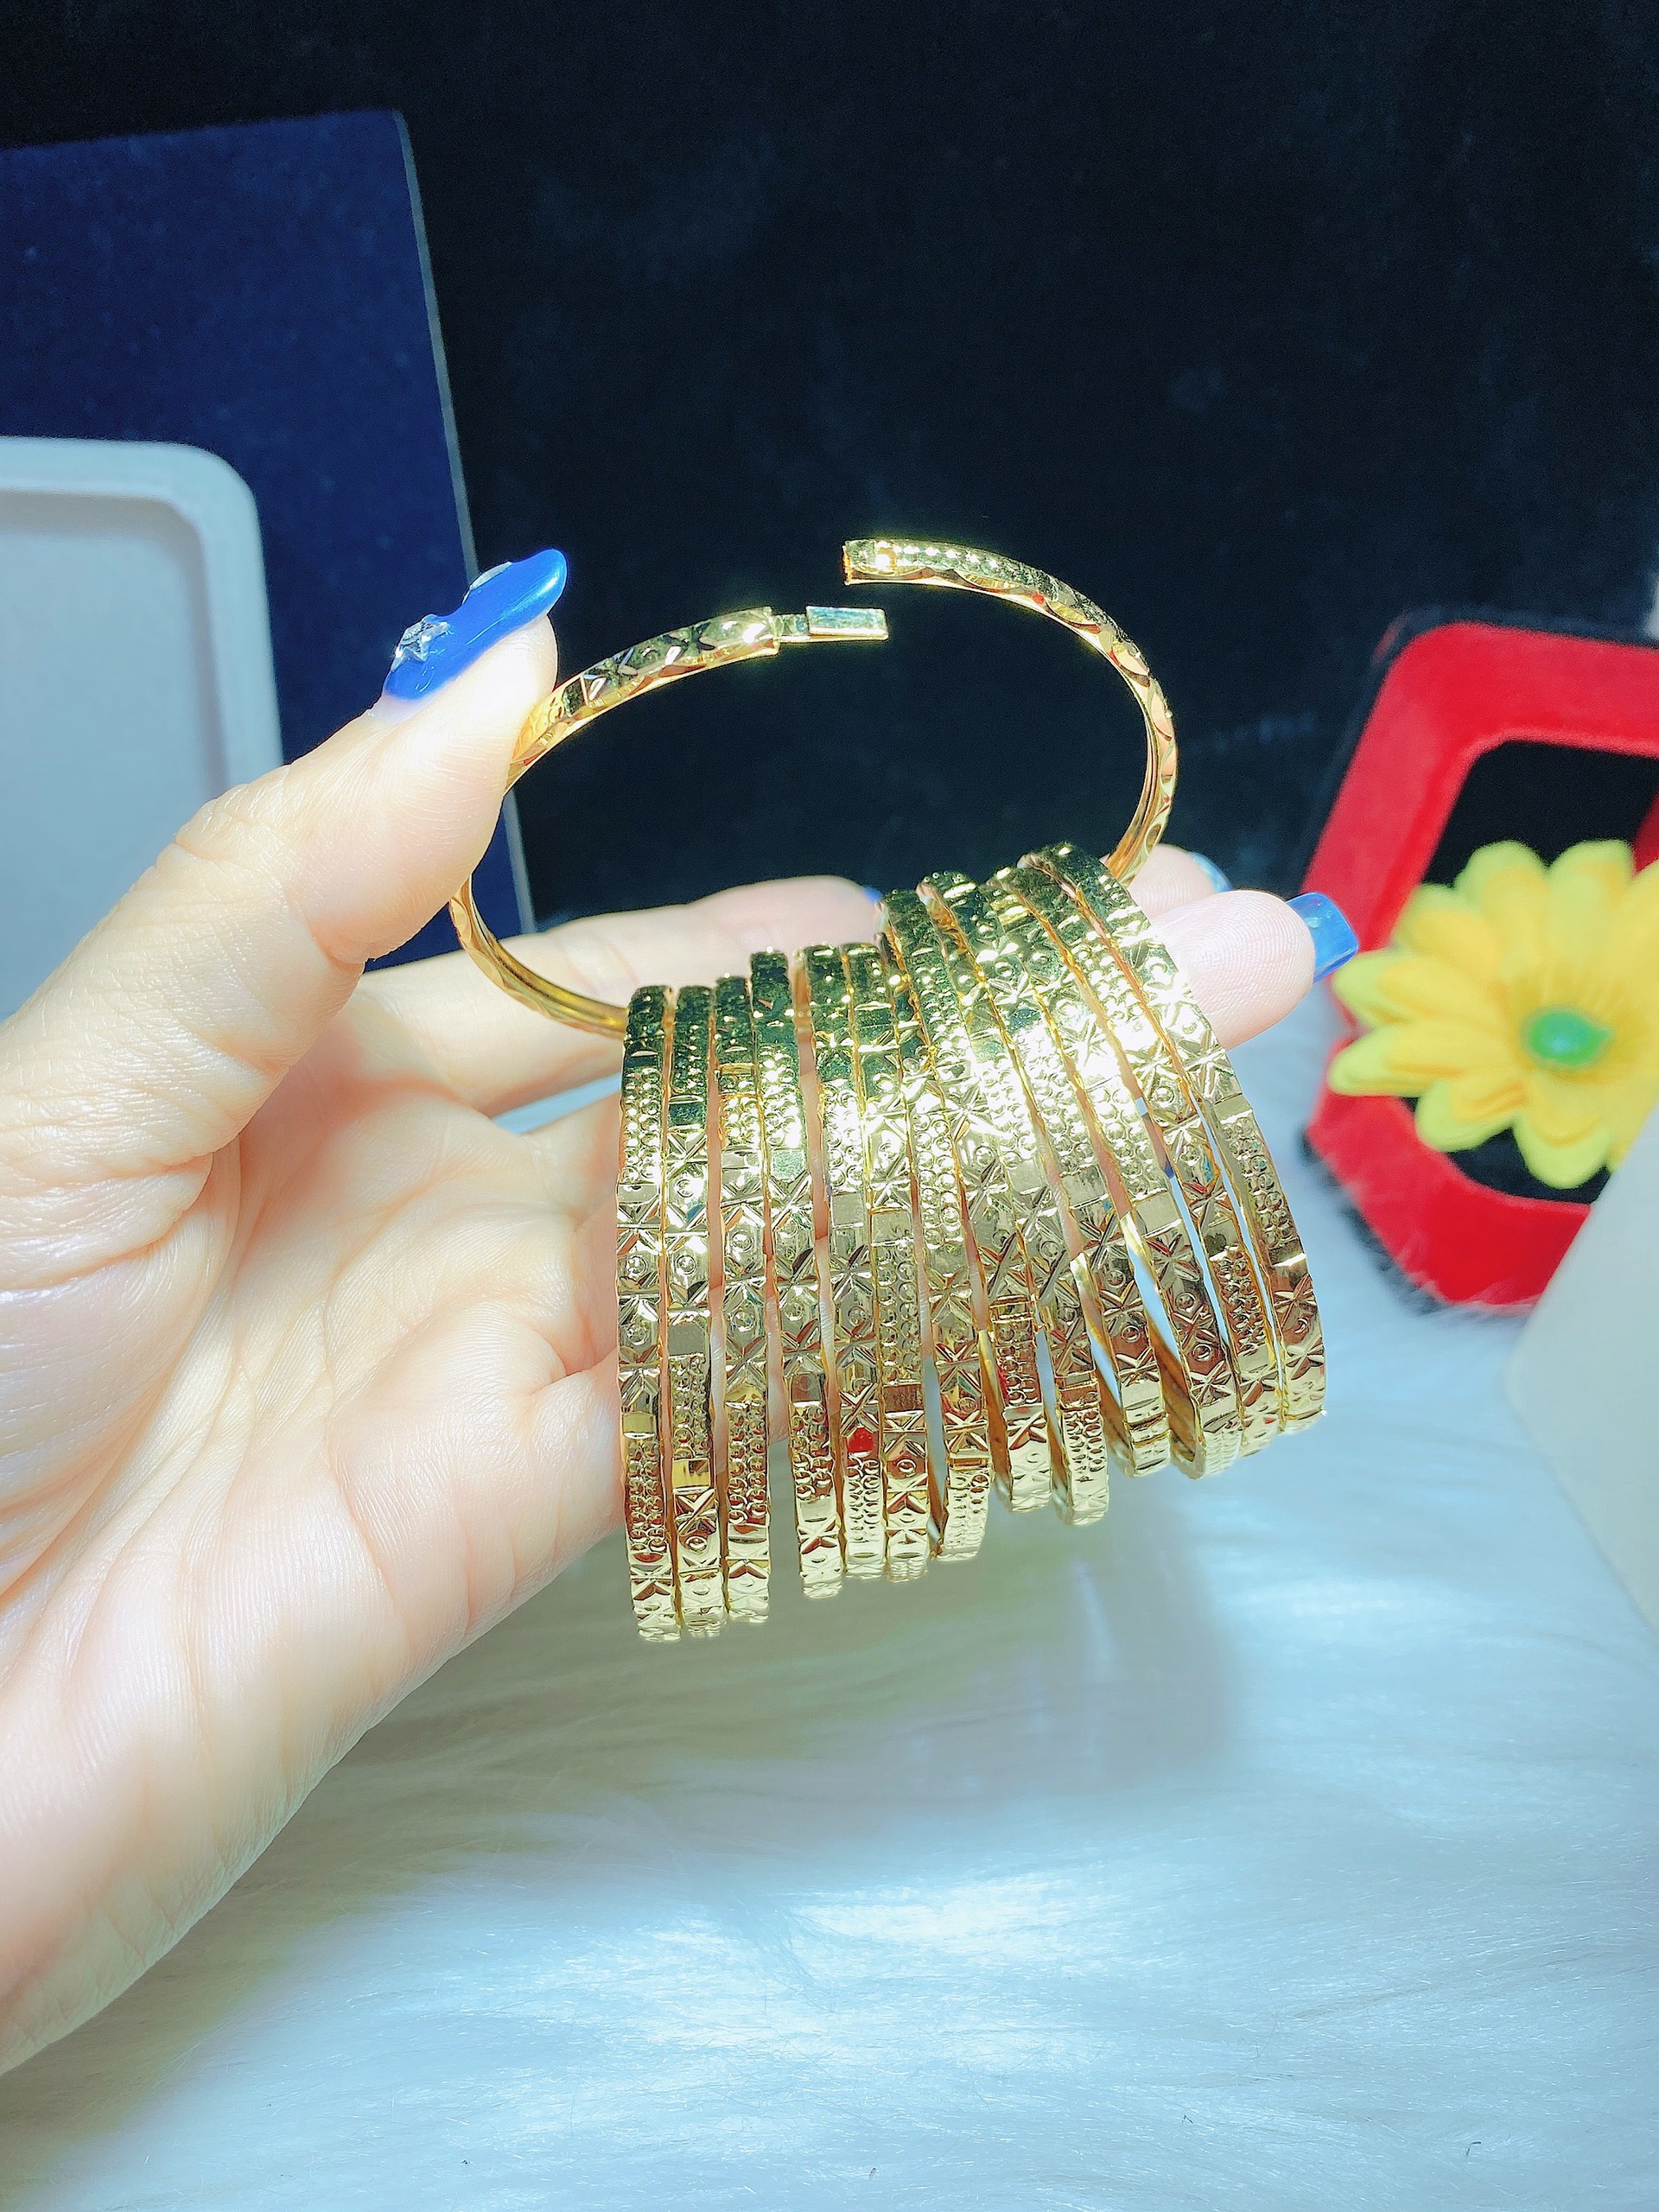 Bộ Ximen 7 Chiếc Khóa Vàng Thật: Sáng tạo và độc đáo, bộ Ximen 7 chiếc khóa vàng thật từ PNJ sẽ là điểm nhấn hoàn hảo cho bộ sưu tập trang sức của bạn. Với những chiếc khóa được chạm khắc tinh tế và đính hạt ngọc trai lấp lánh, bạn sẽ cảm thấy tự tin và quyến rũ hơn bao giờ hết khi mặc trang phục của mình.